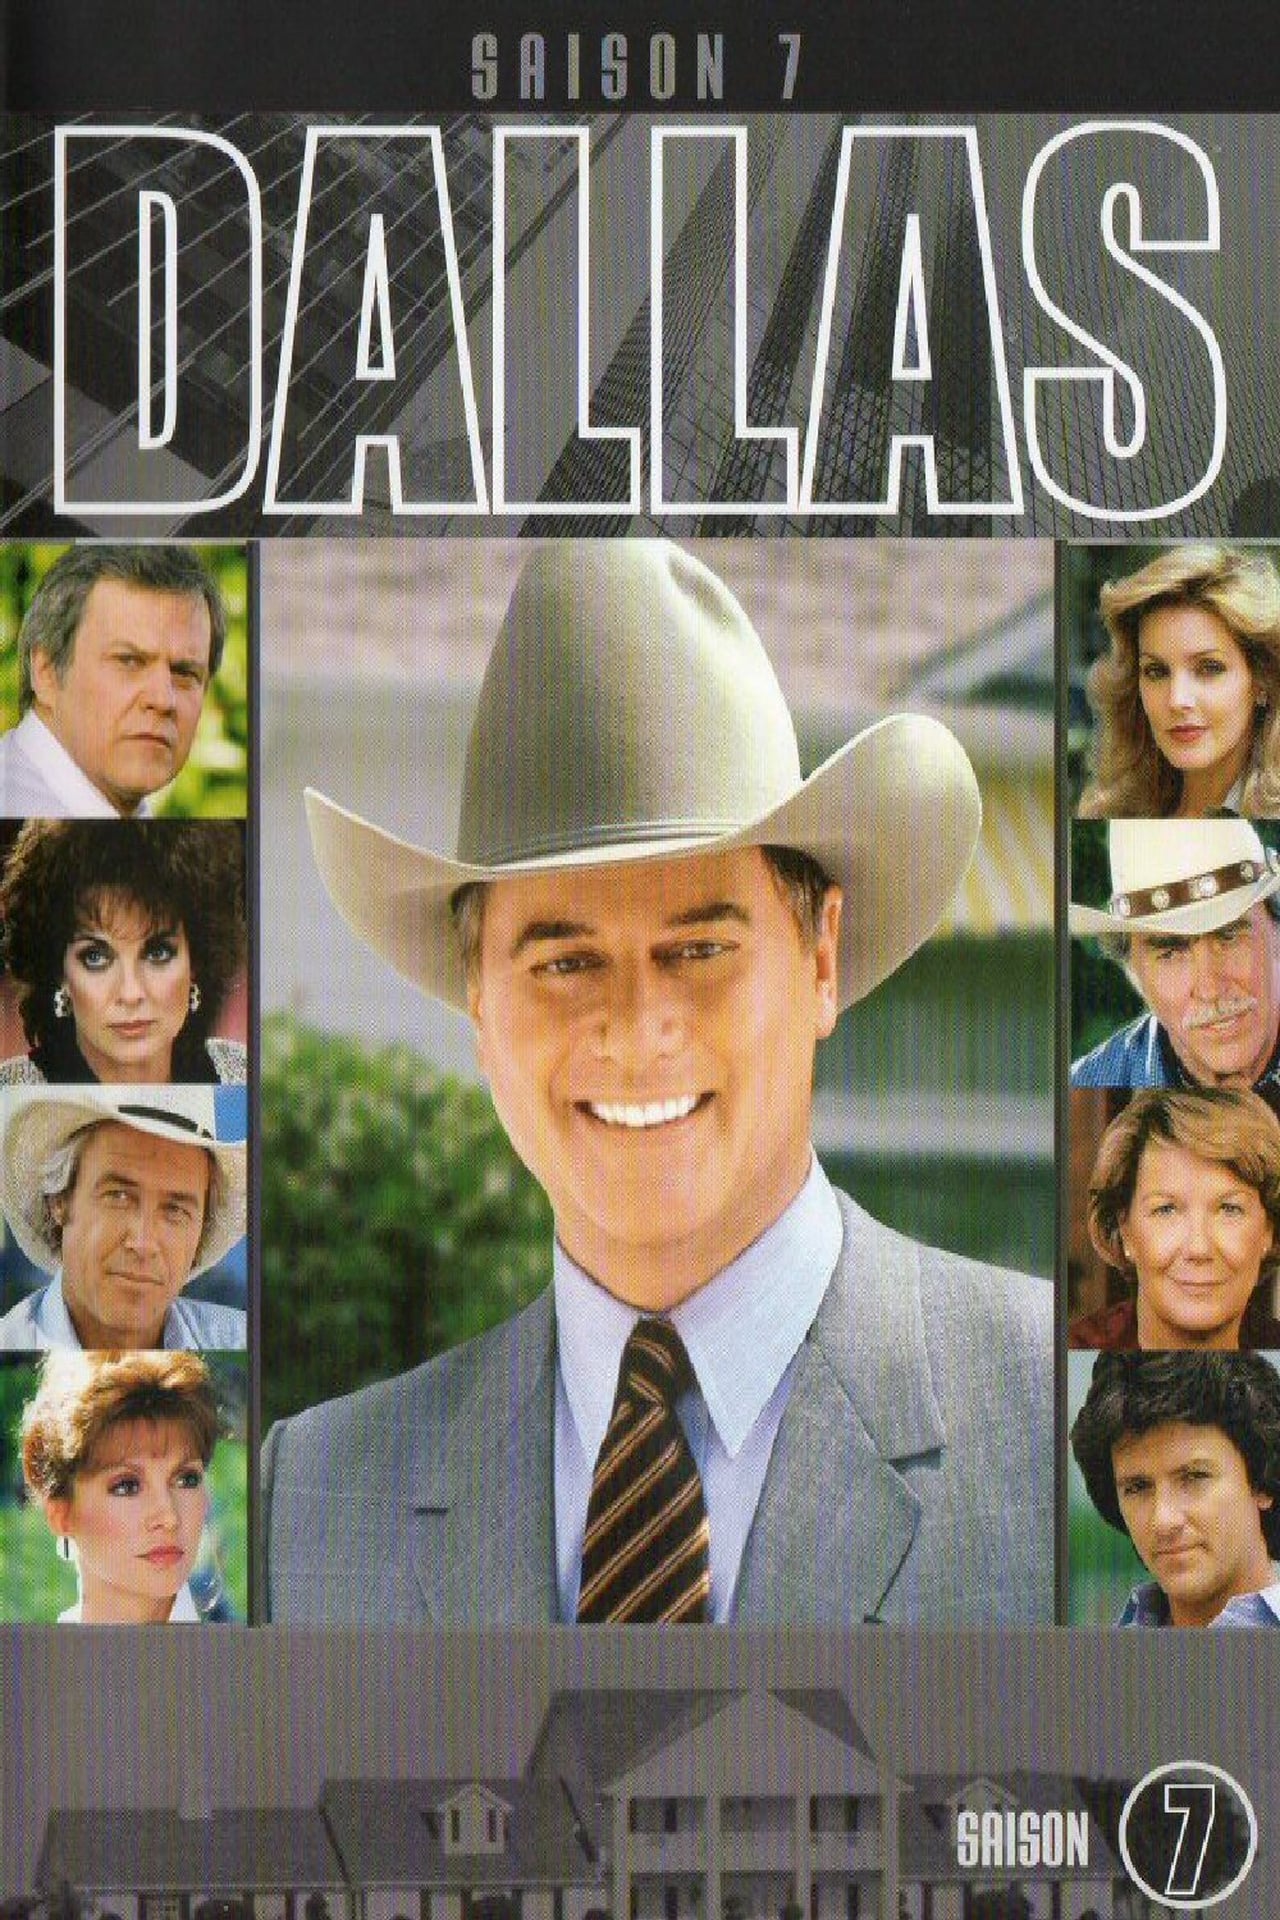 Dallas Season 7